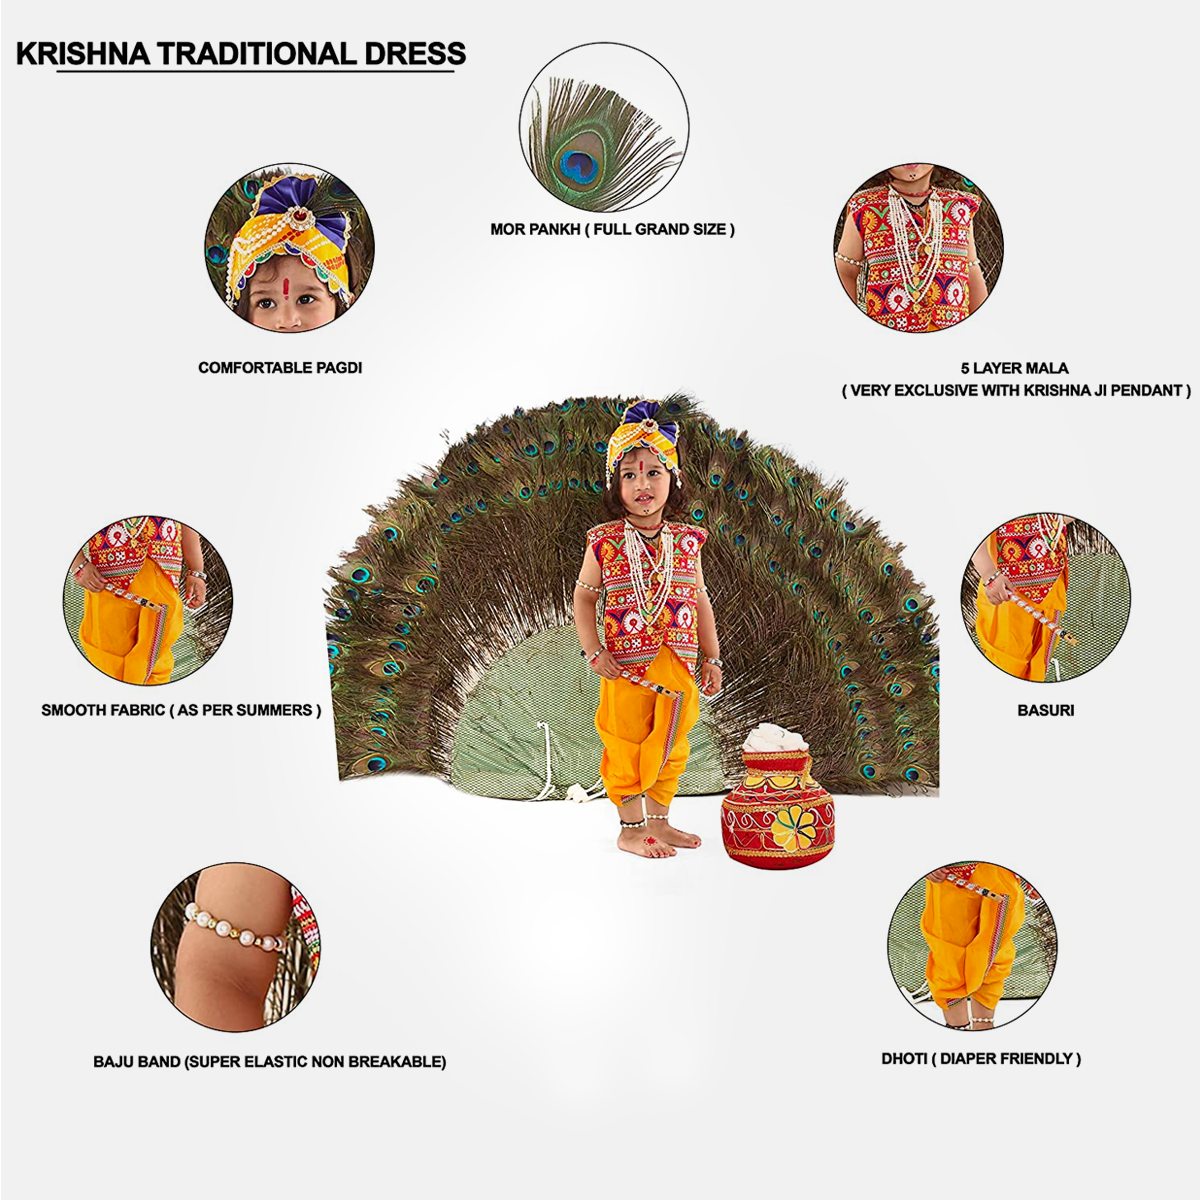 Radha and Krishna Brocade Fabric Janmashtami Mythological Character Costume - Multicolor-Jacket